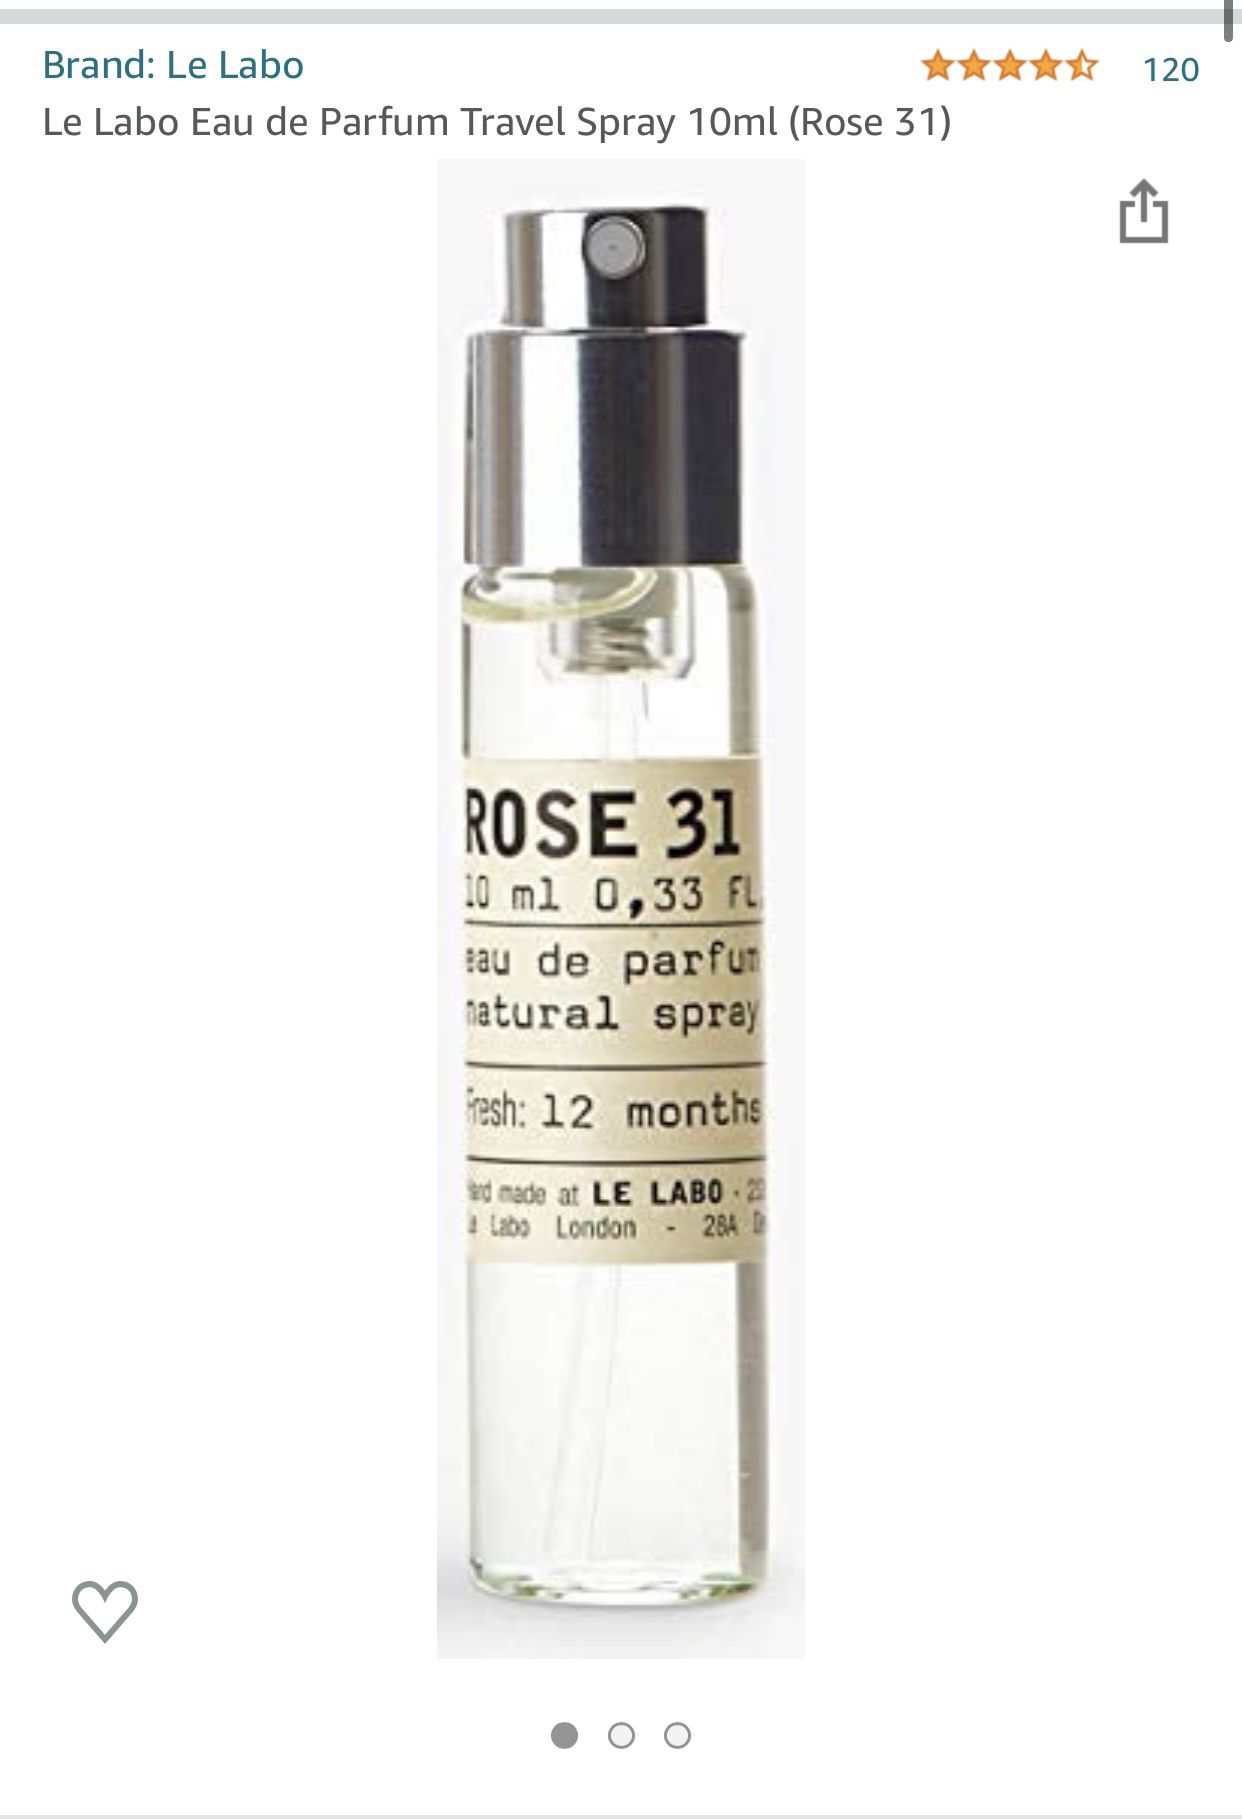 Le Labo Eau de Parfum Travel Spray 10ml (Rose 31)